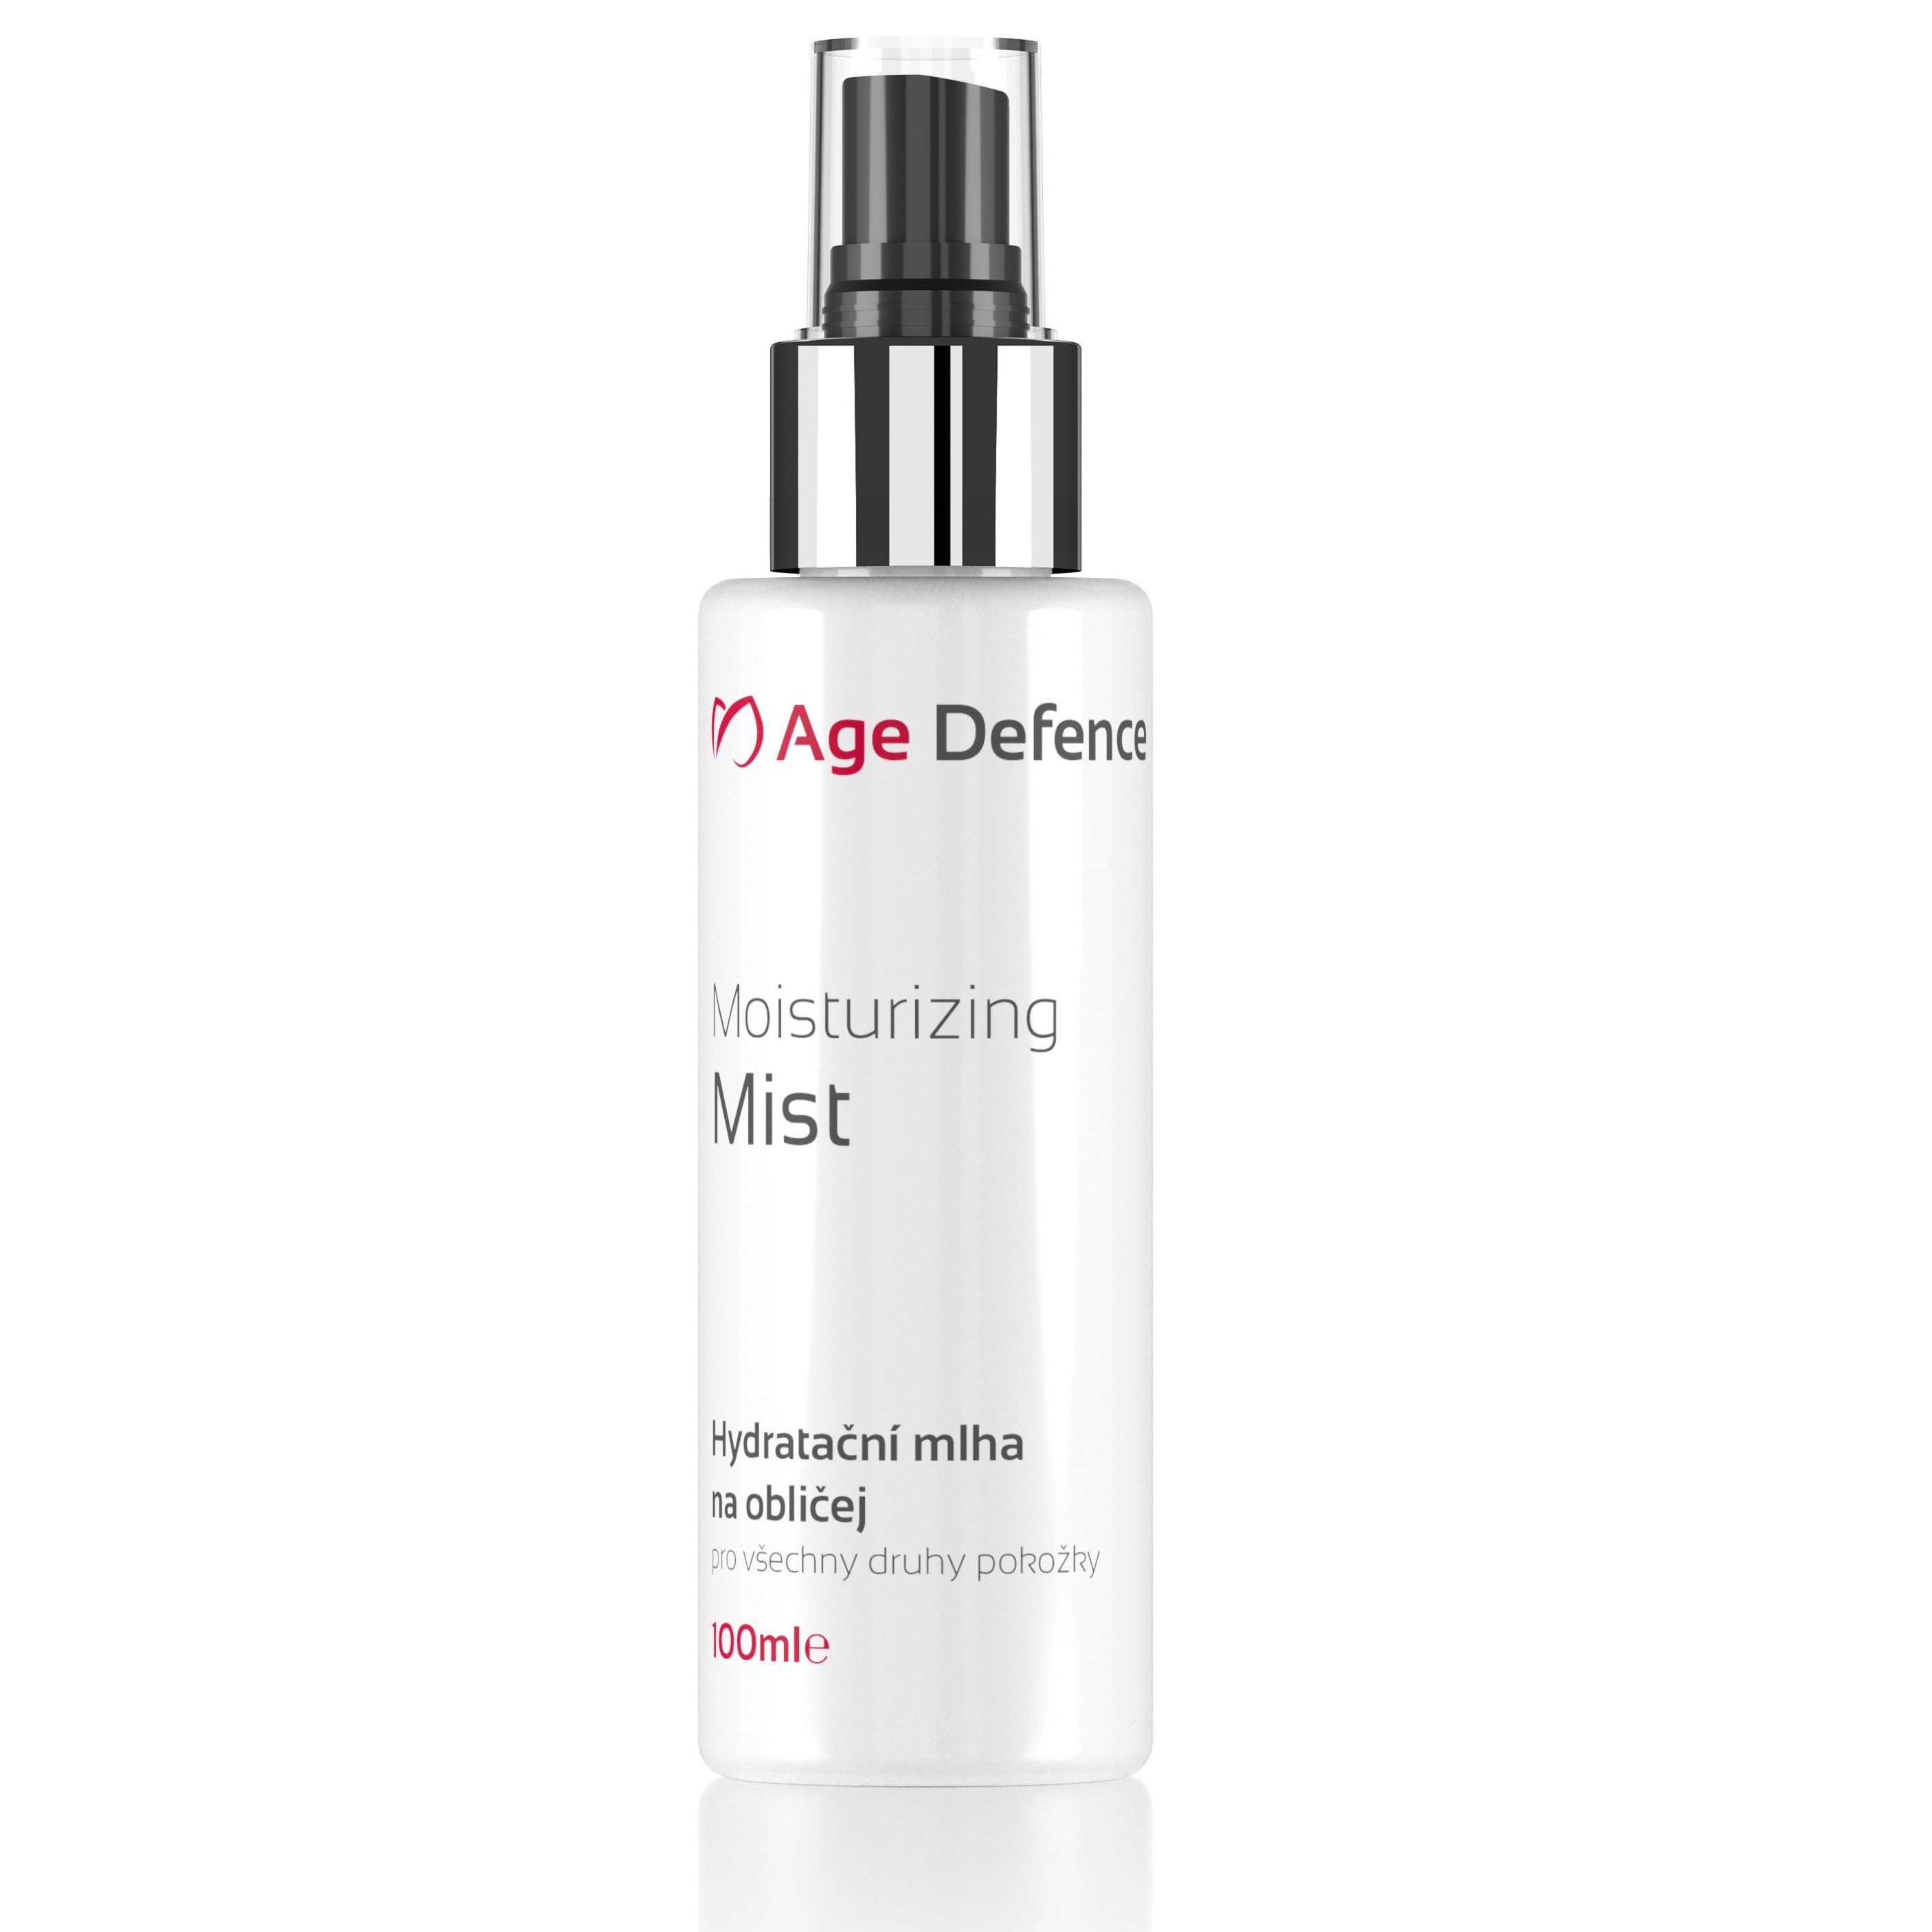 Age Defence Moisturizing Mist - Hydratační mlha na obličej (100 ml)